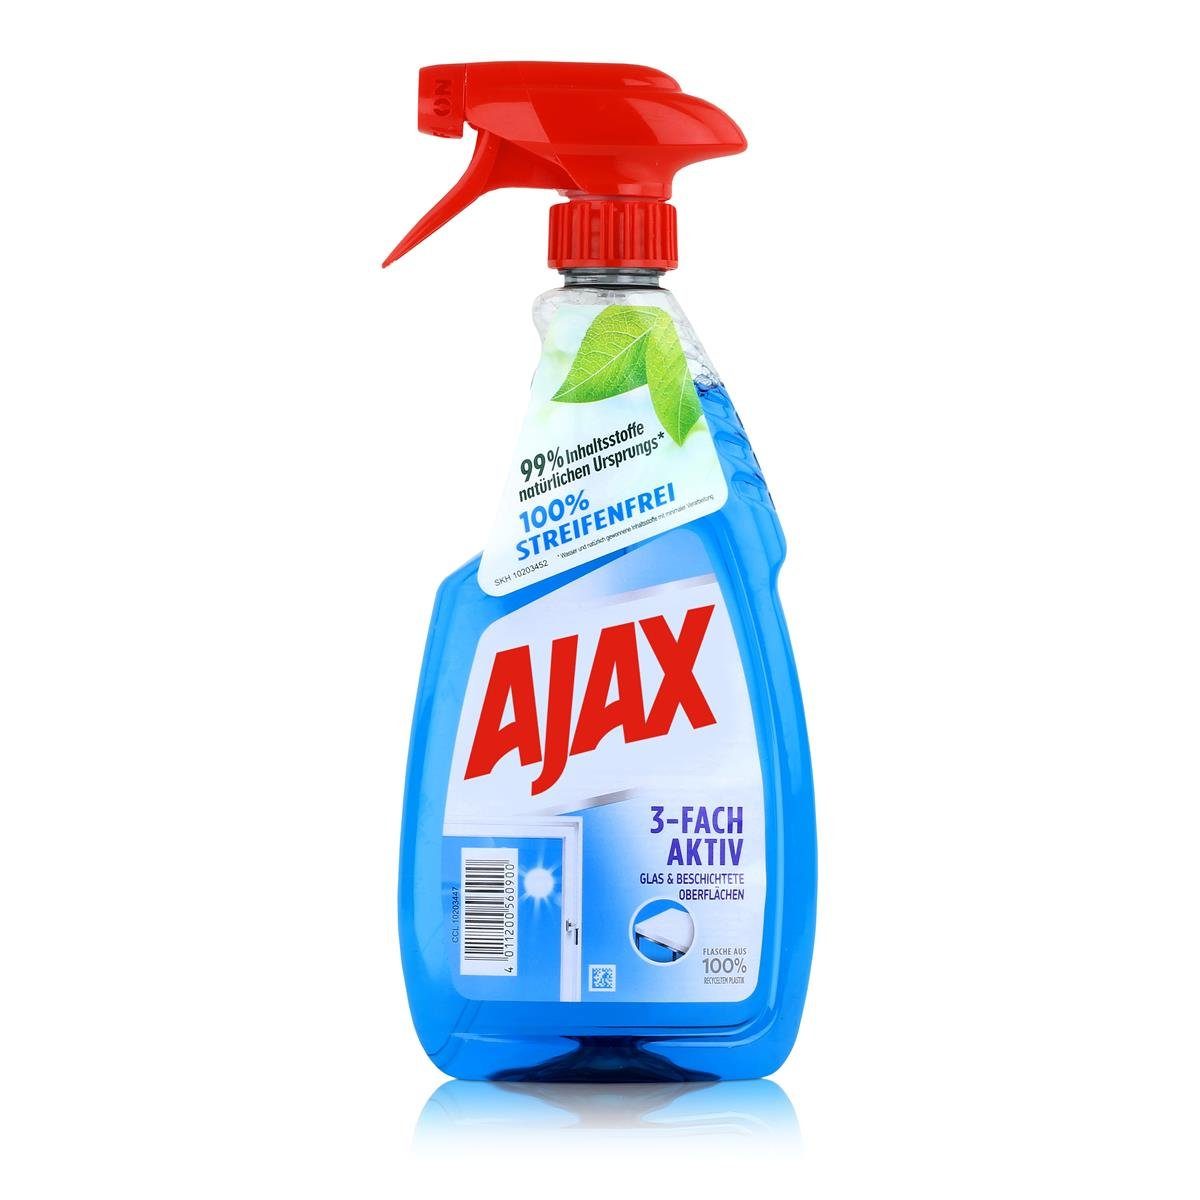 AJAX Ajax Glasreiniger 500ml - Für Glas & Beschichtete Oberflächen (1er Pac Glasreiniger